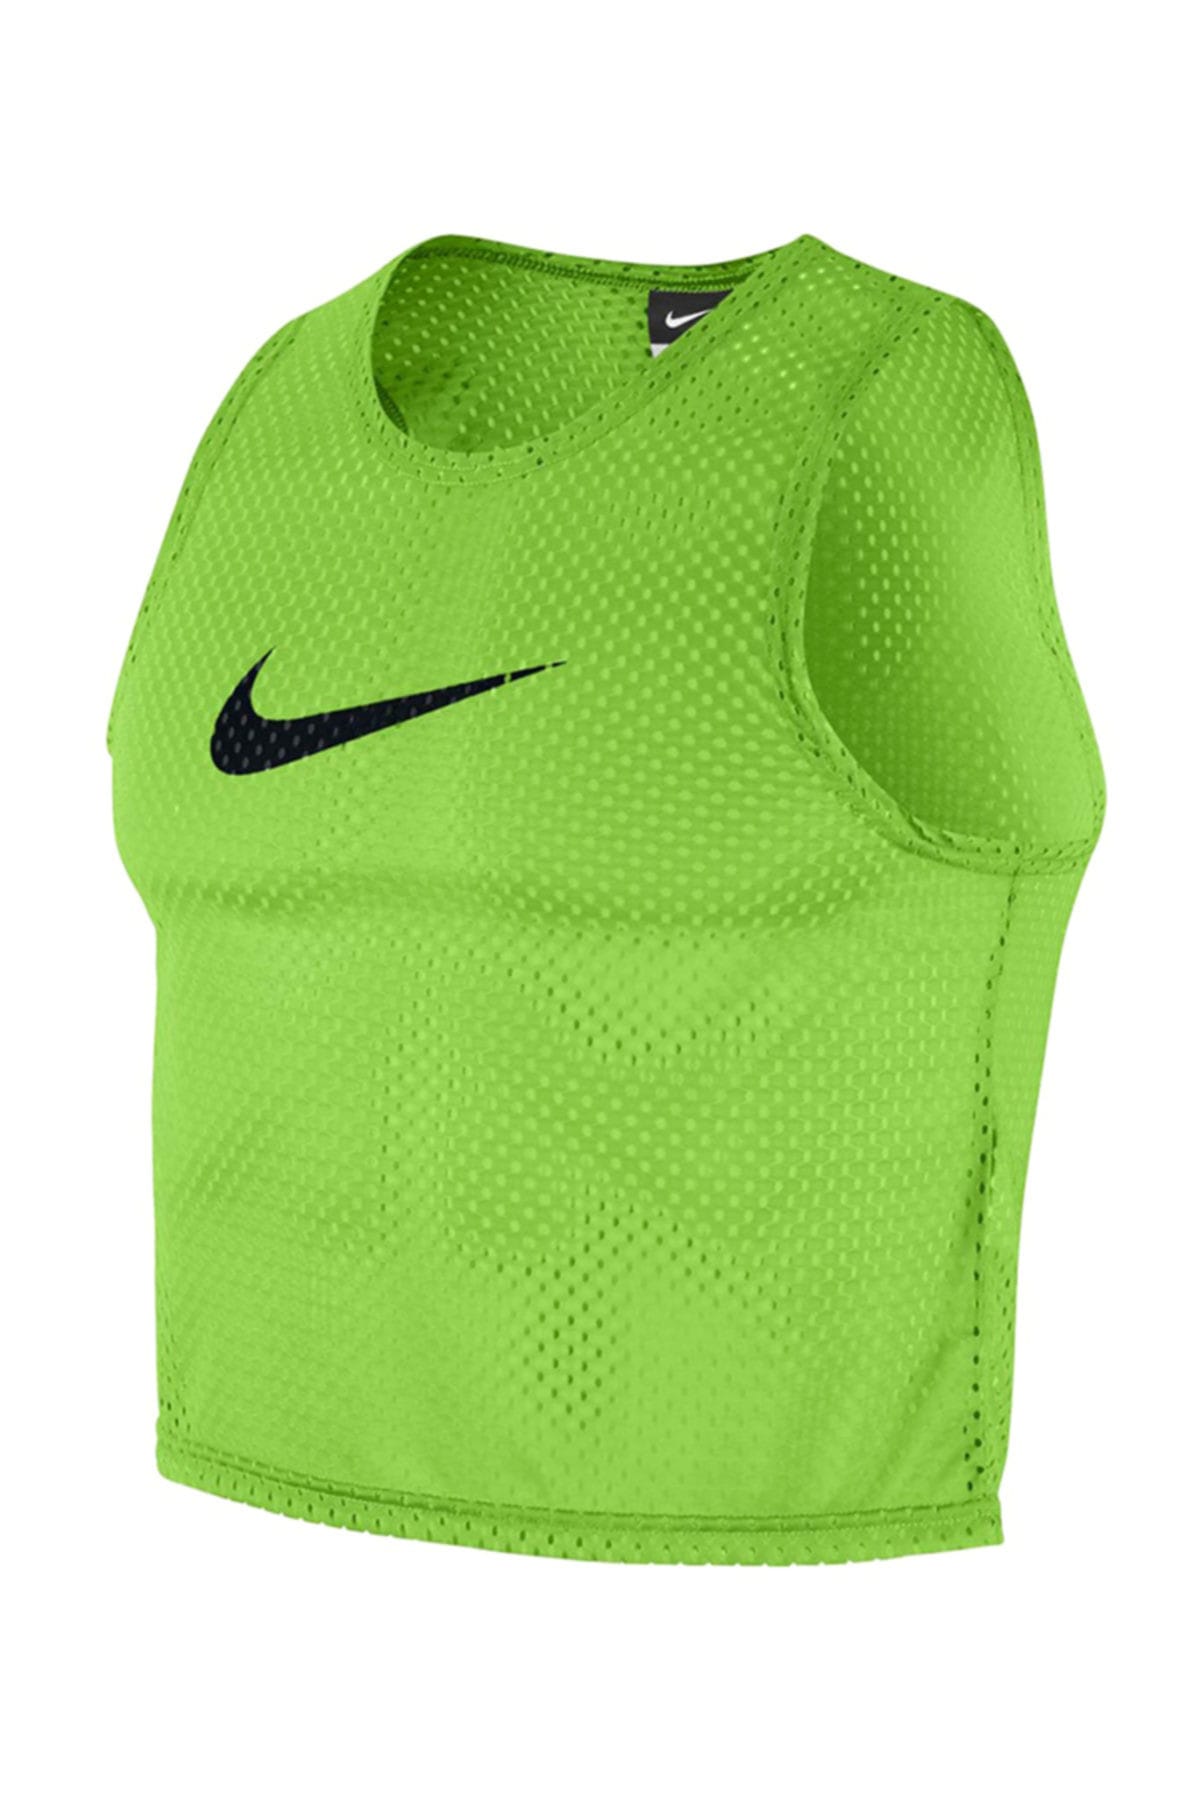 نیمتنه ورزشی زنانه سبز پسته ای نایک Nike